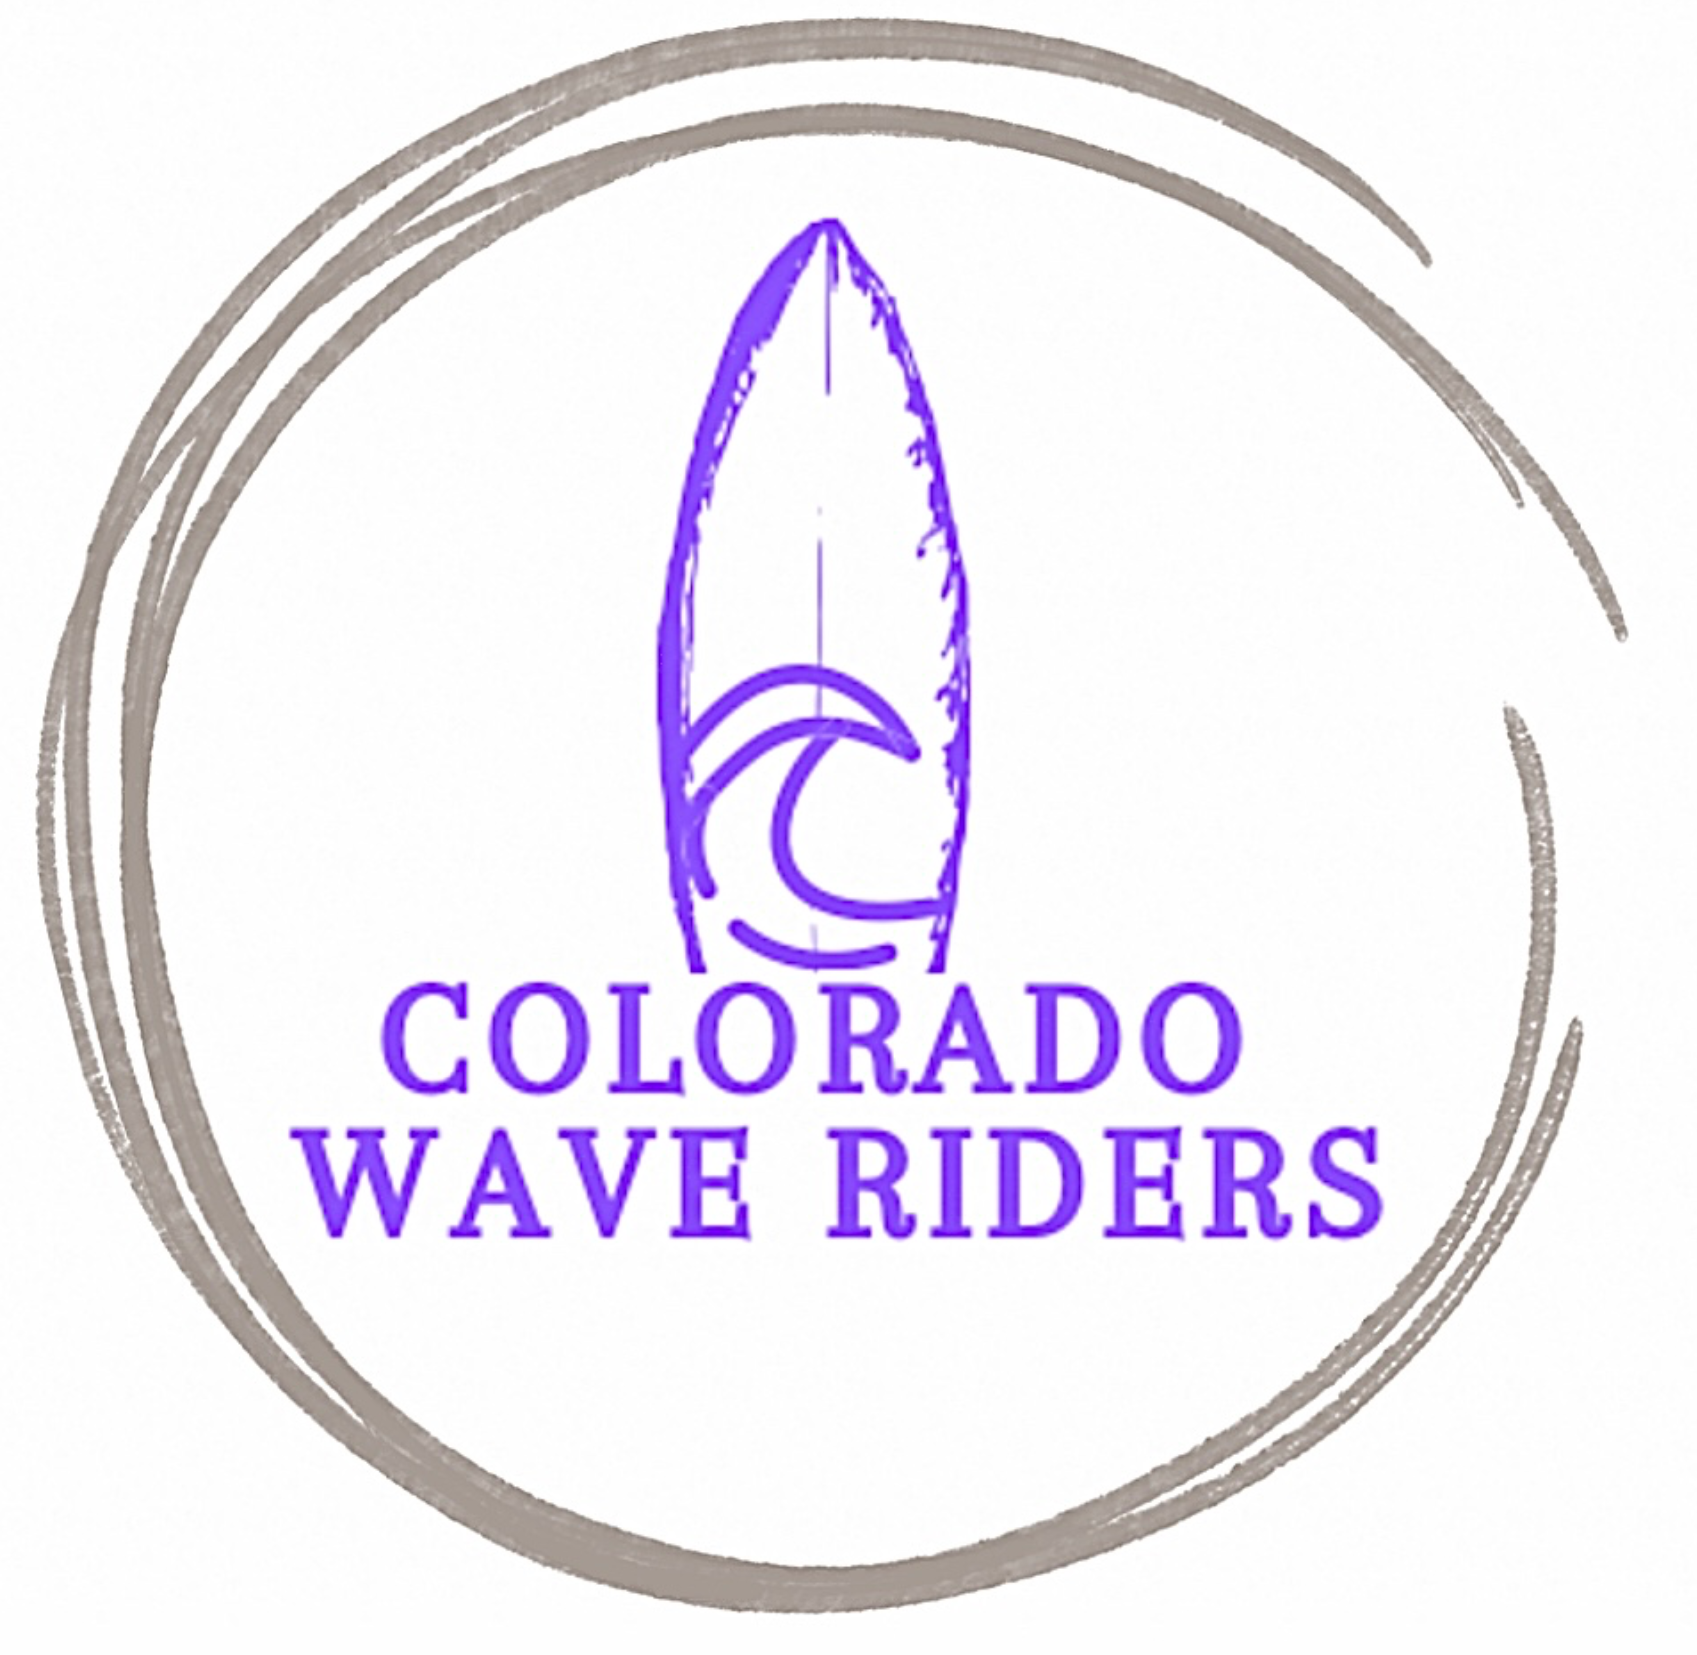 Colorado Wave Riders